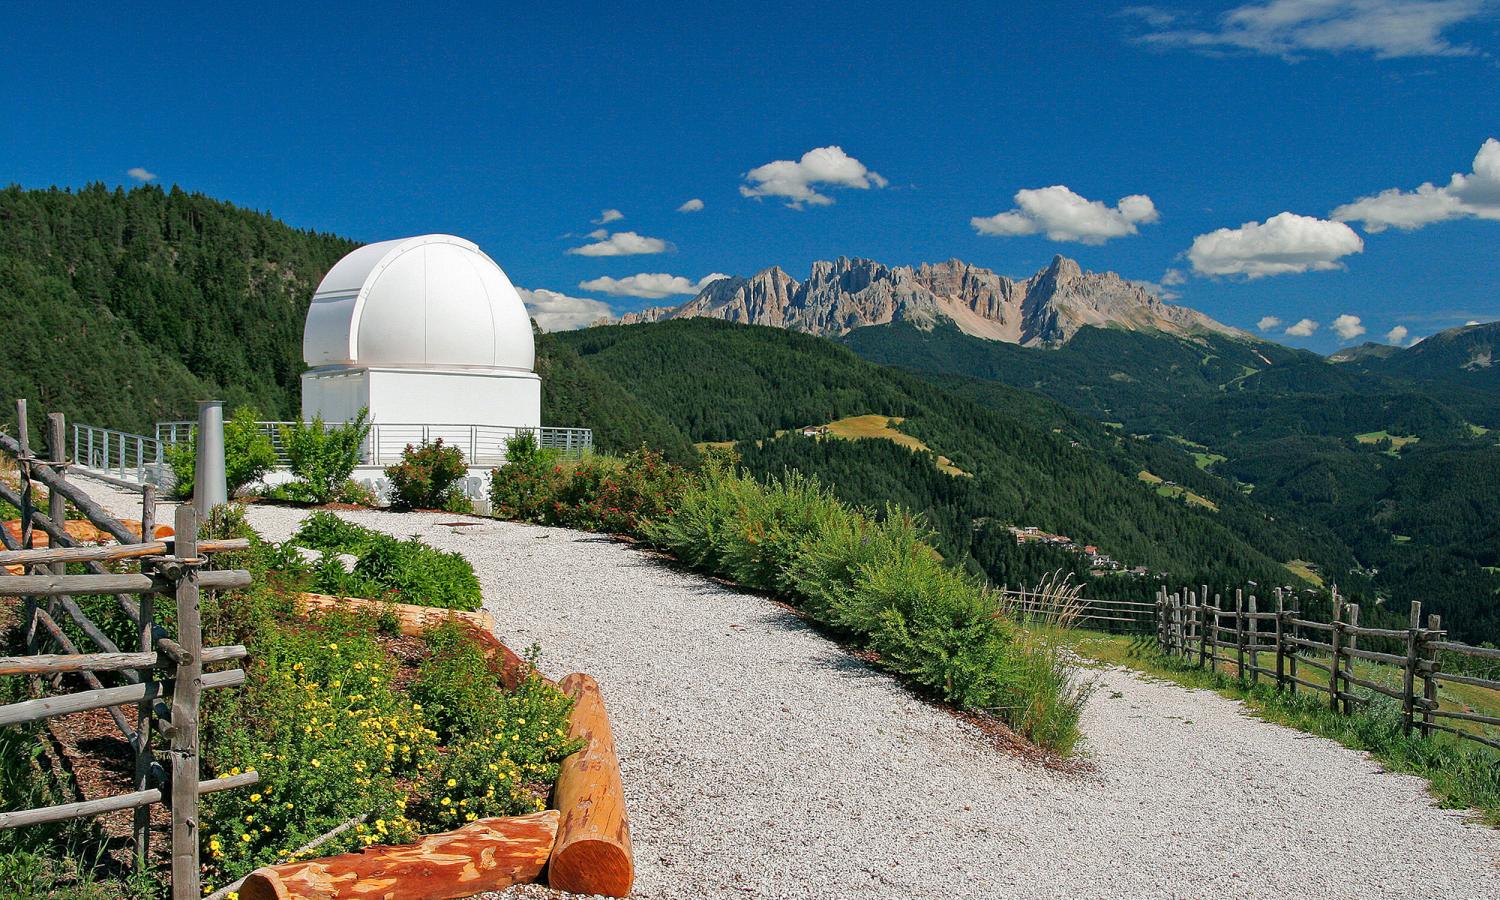 Max Valier observatory in Obergummer